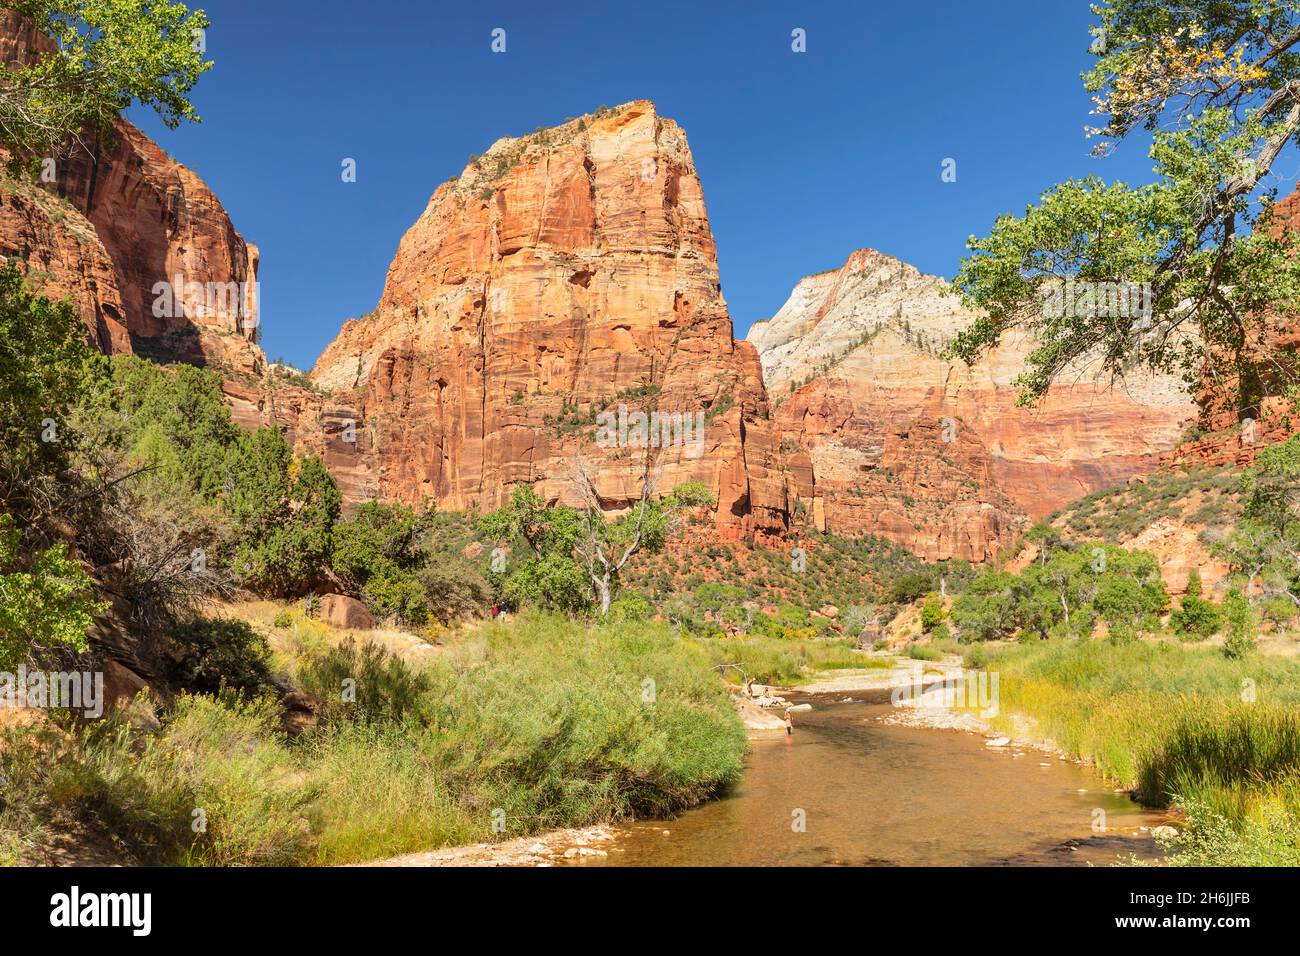 Virgin River und Angel's Landing, Zion National Park, Colorado Plateau, Utah, Vereinigte Staaten von Amerika, Nordamerika Stockfoto